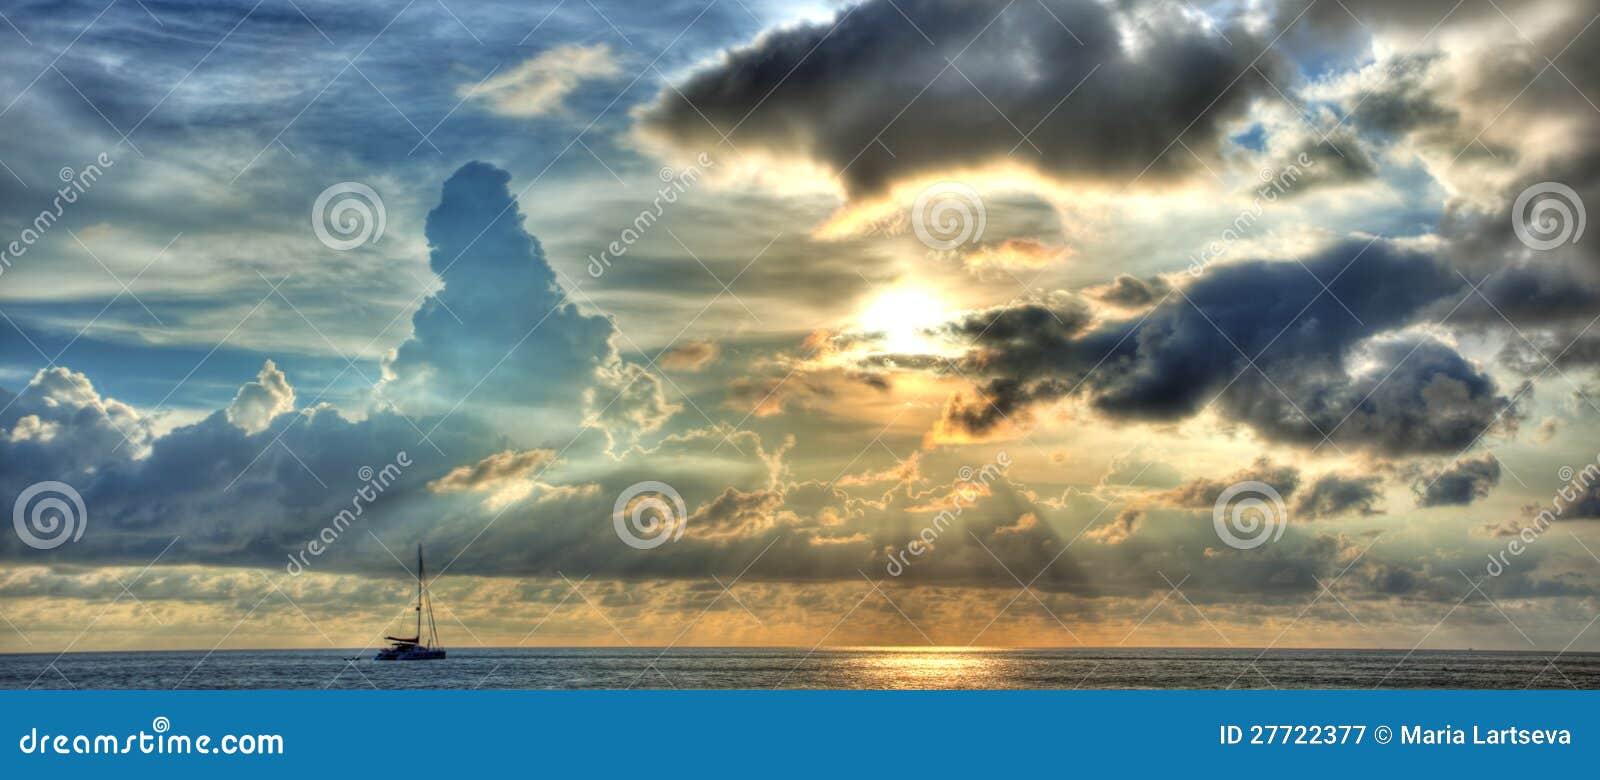 Sonnenuntergang mit Yacht. Blaues und gelbes Sonnenuntergangpanorama über Ozean mit Yacht silhouete